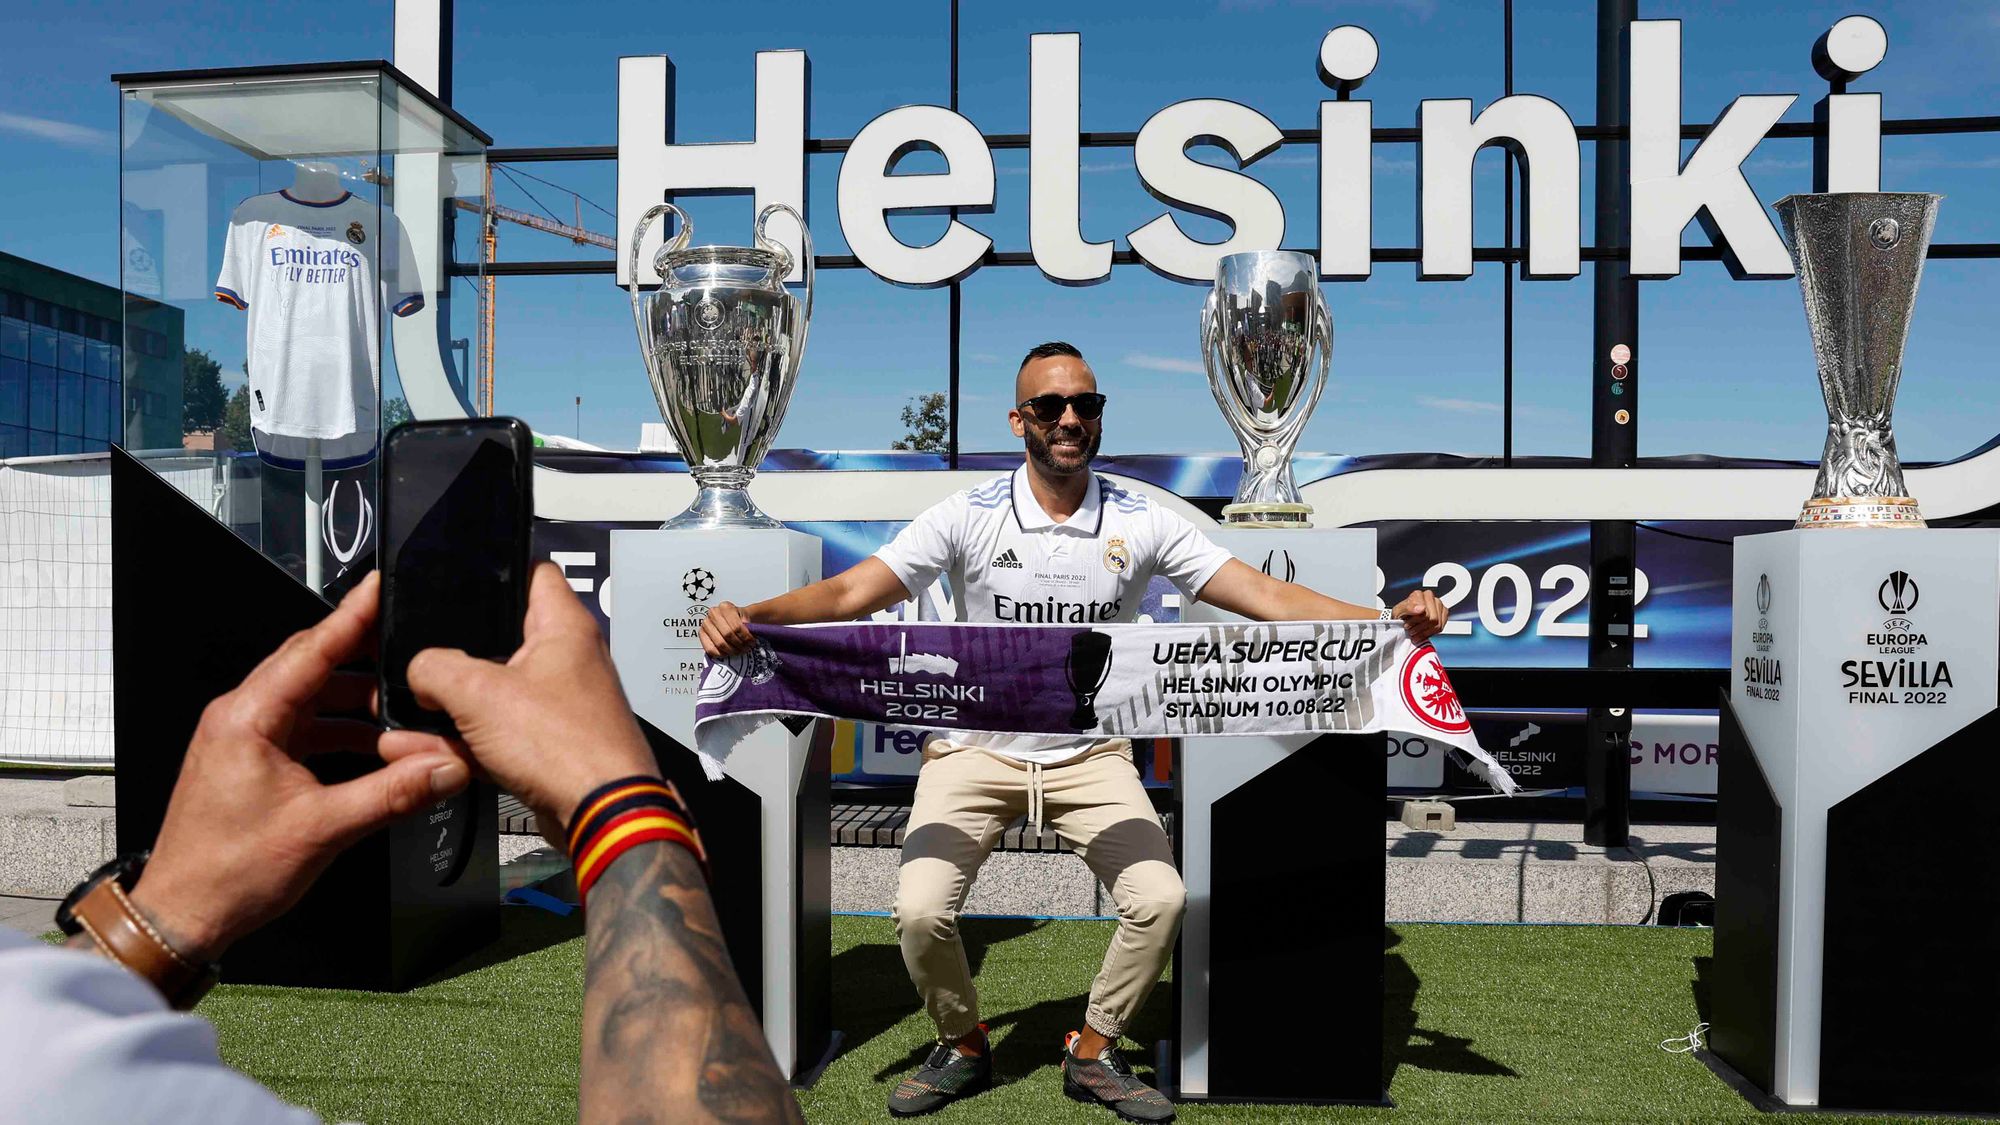 Previo a la Supercopa las aficiones inundan las calles de Helsinki